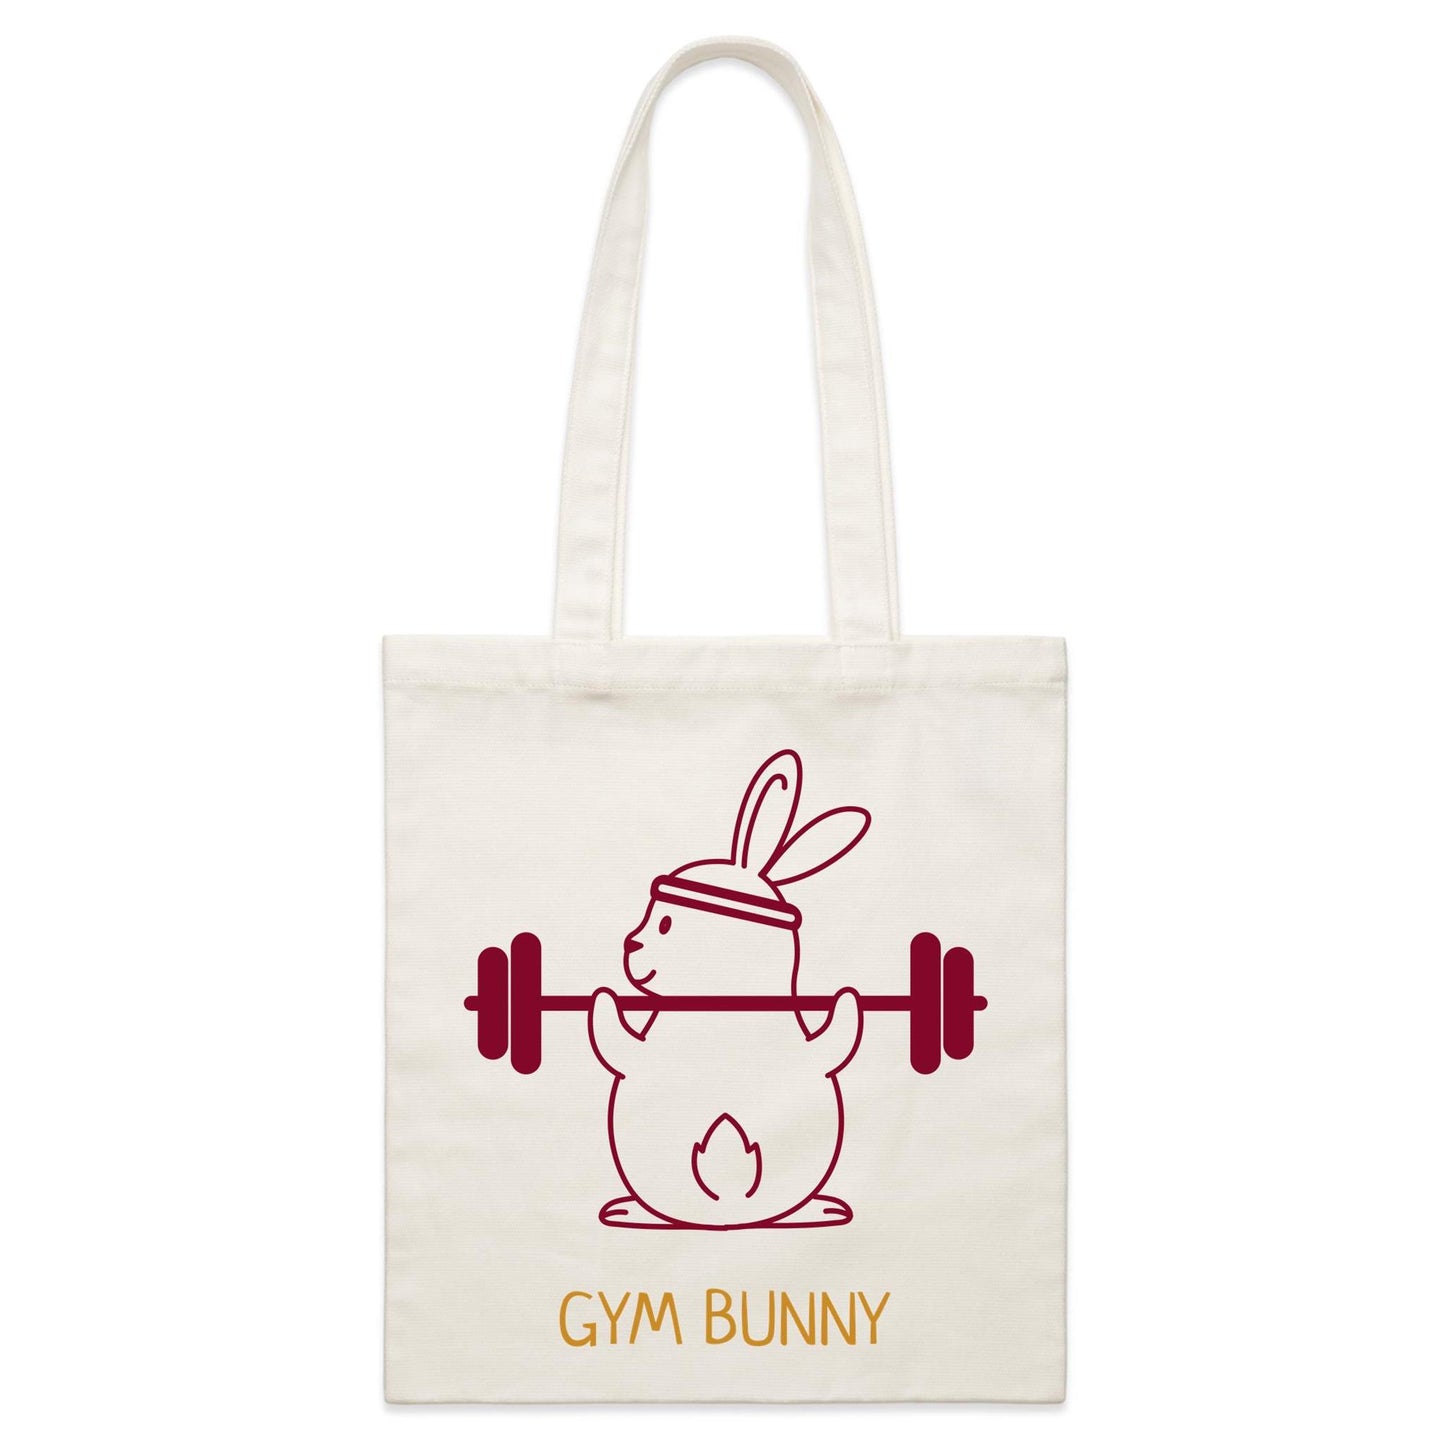 Gym Bunny - Parcel Canvas Tote Bag Default Title Parcel Tote Bag